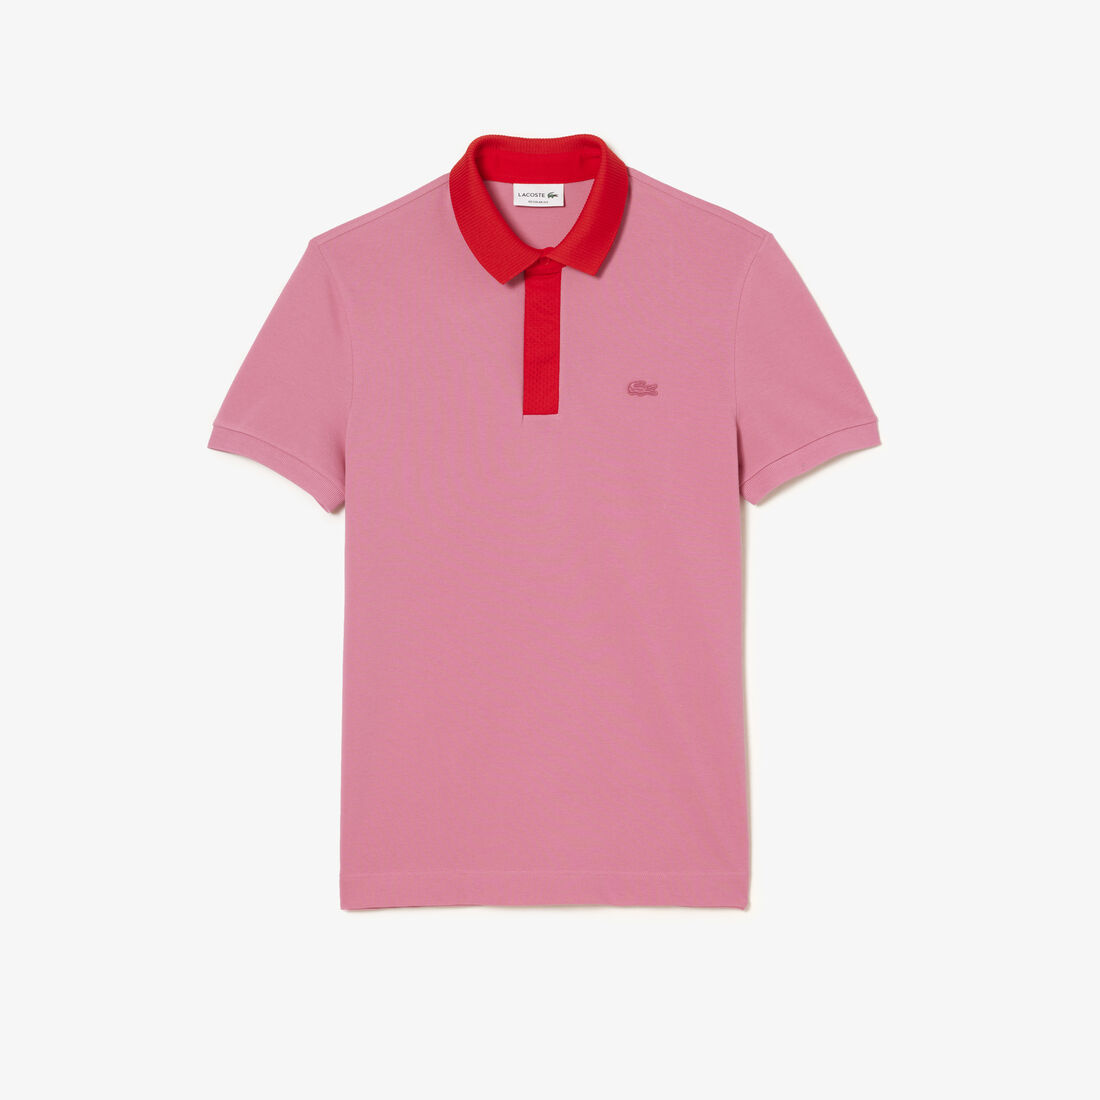 Buy Men's Lacoste Organic Cotton Pique Polo Shirt | Lacoste UAE